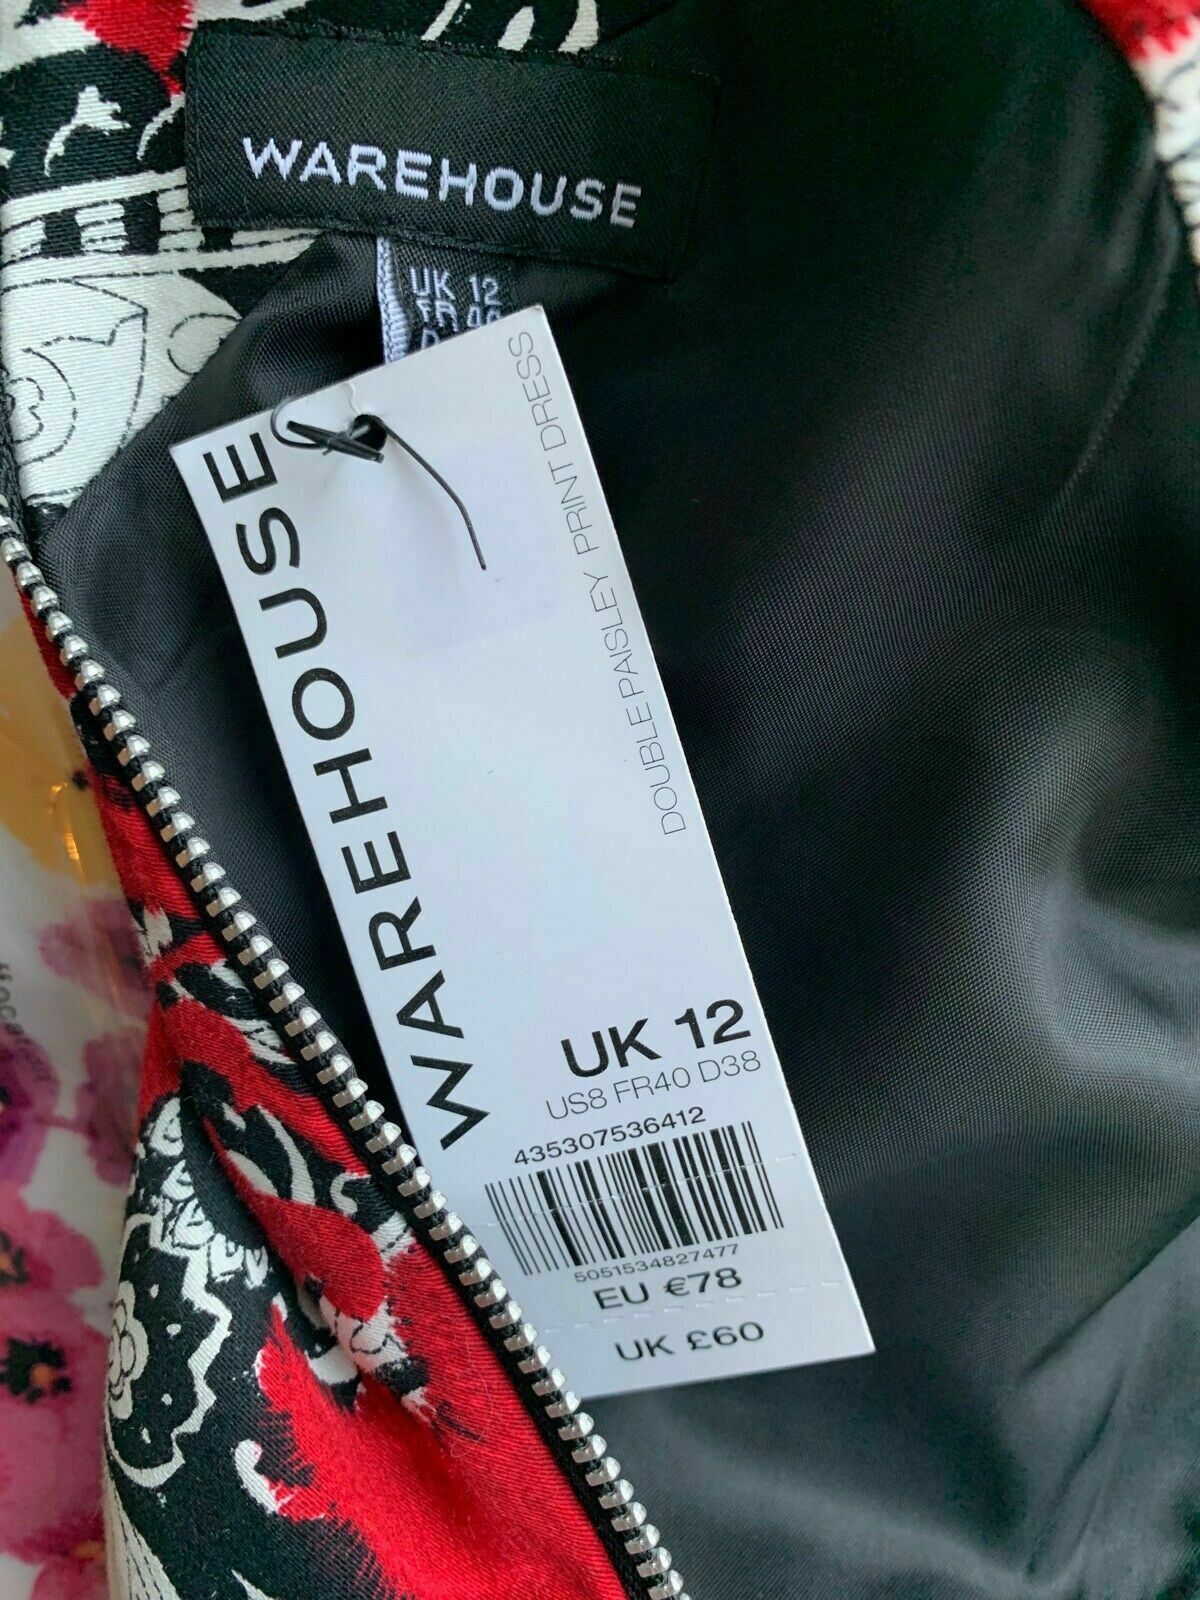 Warehouse Paisley Dress Size 12 Black White Red Black Band Sleeveless